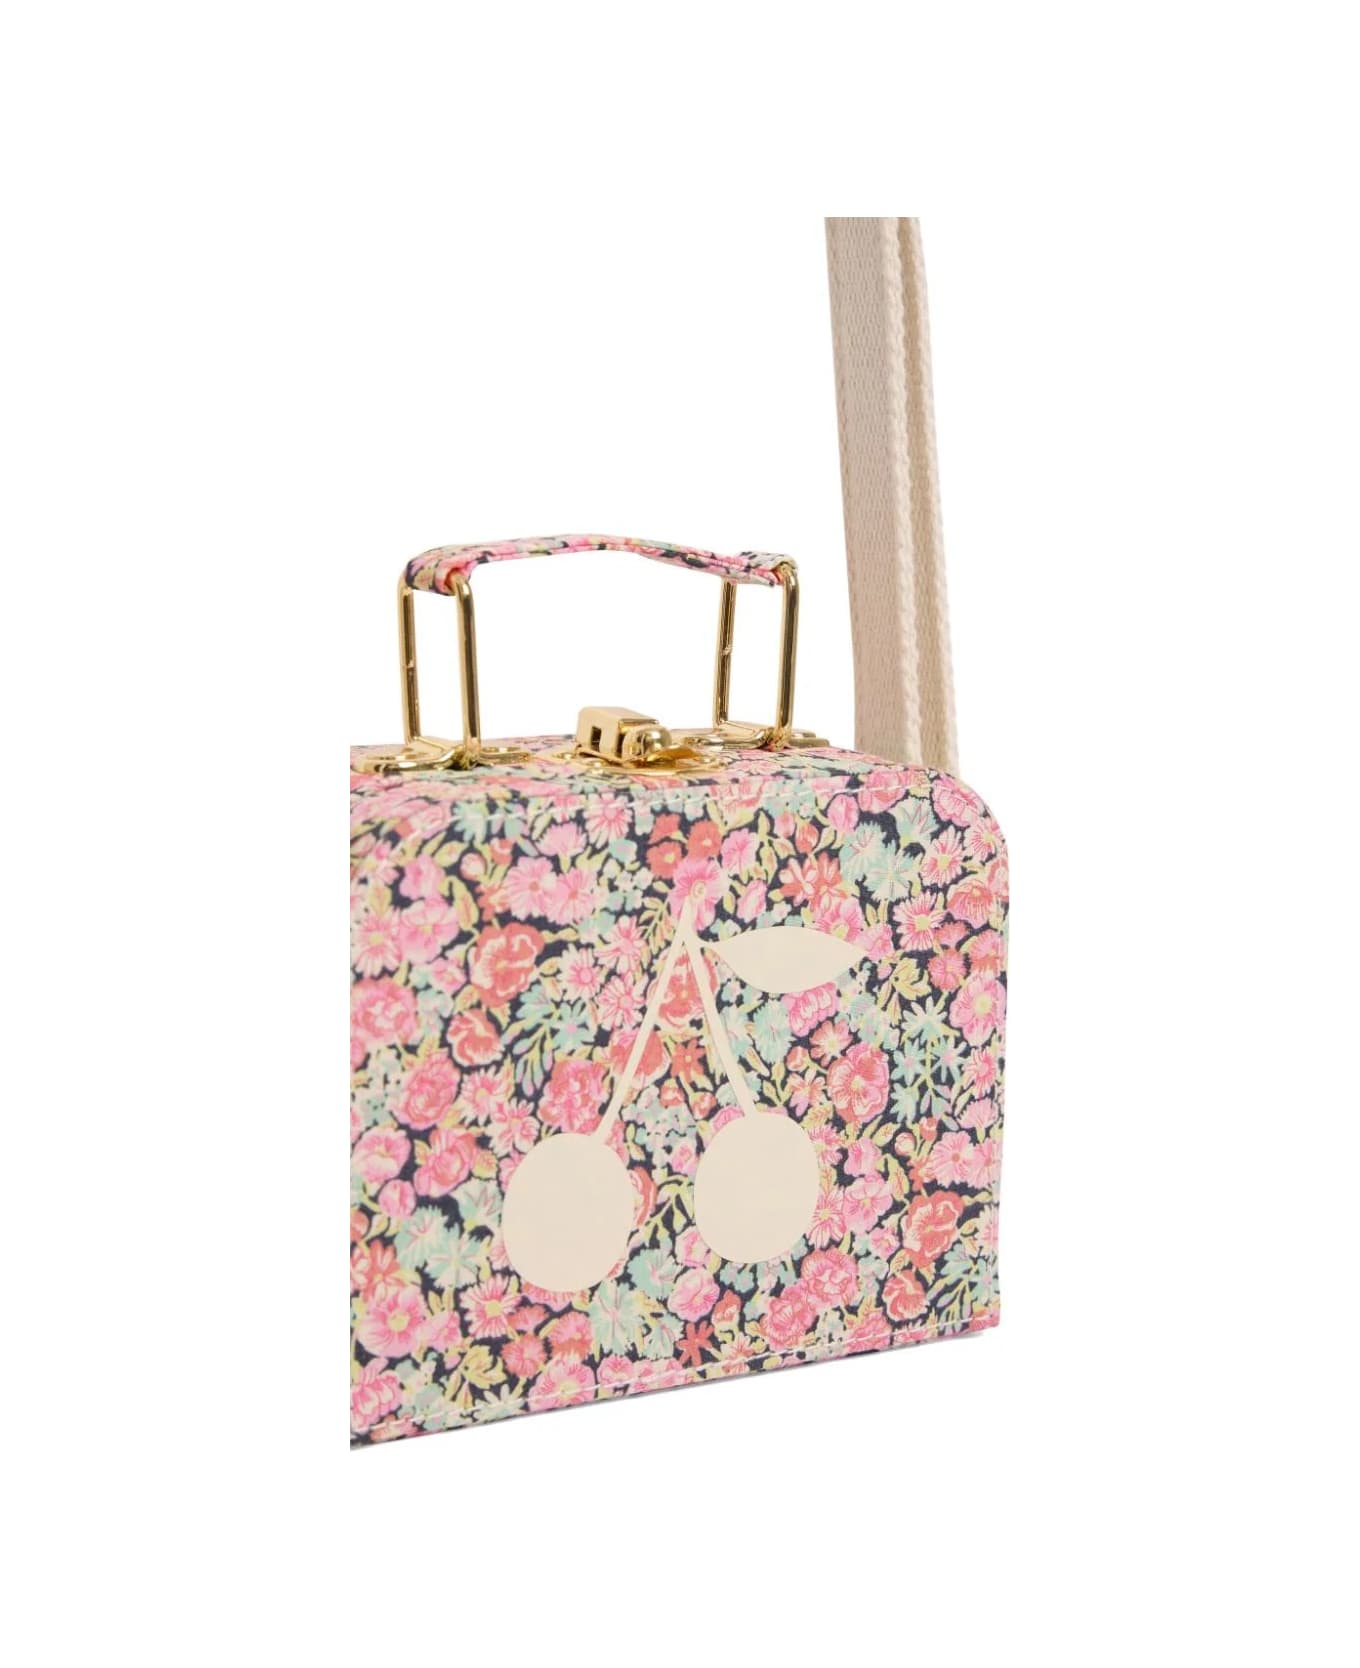 Bonpoint Coral Aimane Suitcase Bag - MULTICOLOR